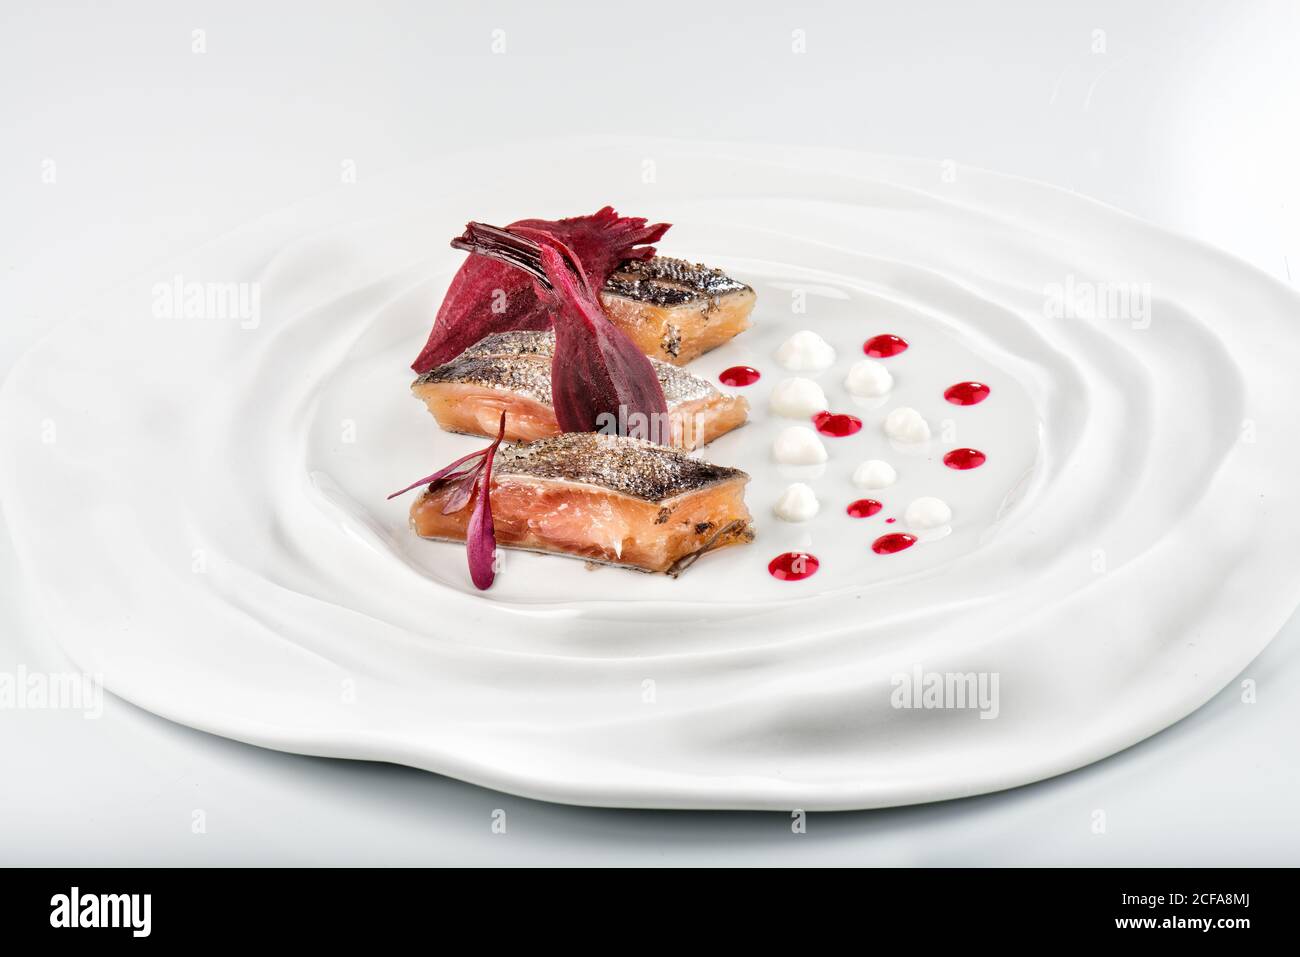 Spuntino fresco e gustoso di filetto di salmone con vivide erbe vinose su un piatto rotondo in ceramica su sfondo bianco in un ristorante moderno Foto Stock